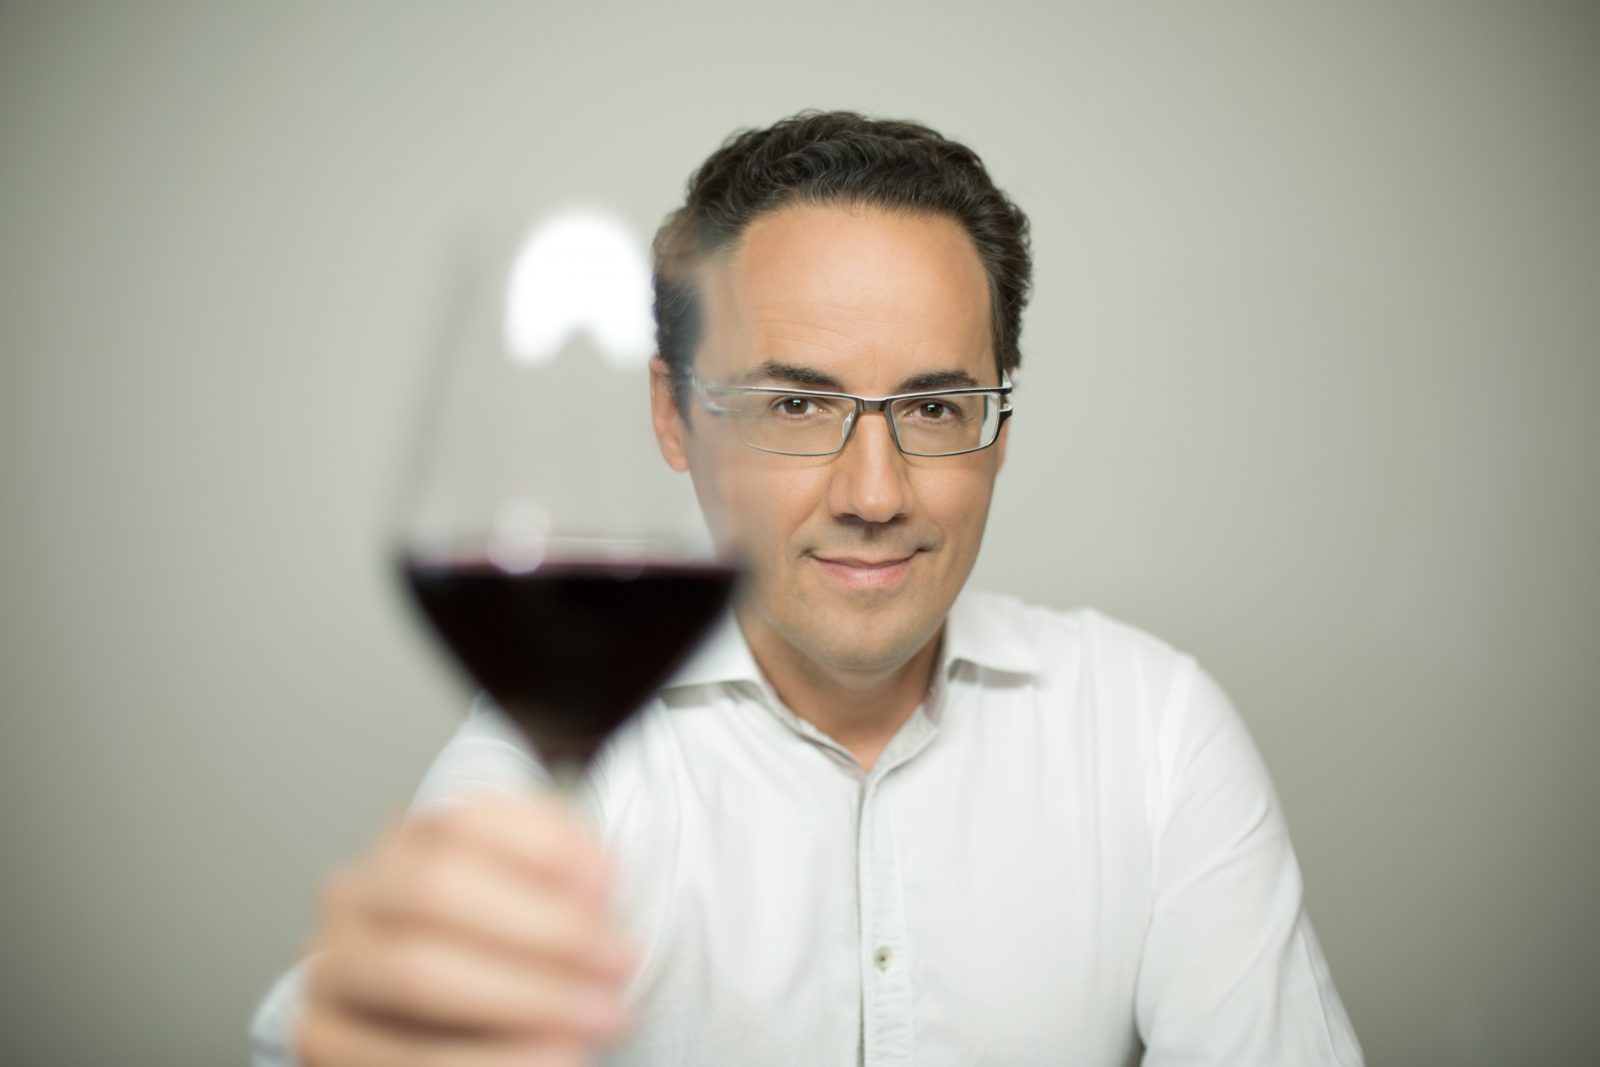 François Chartier sera à Drummondville pour parler vin et bouffe